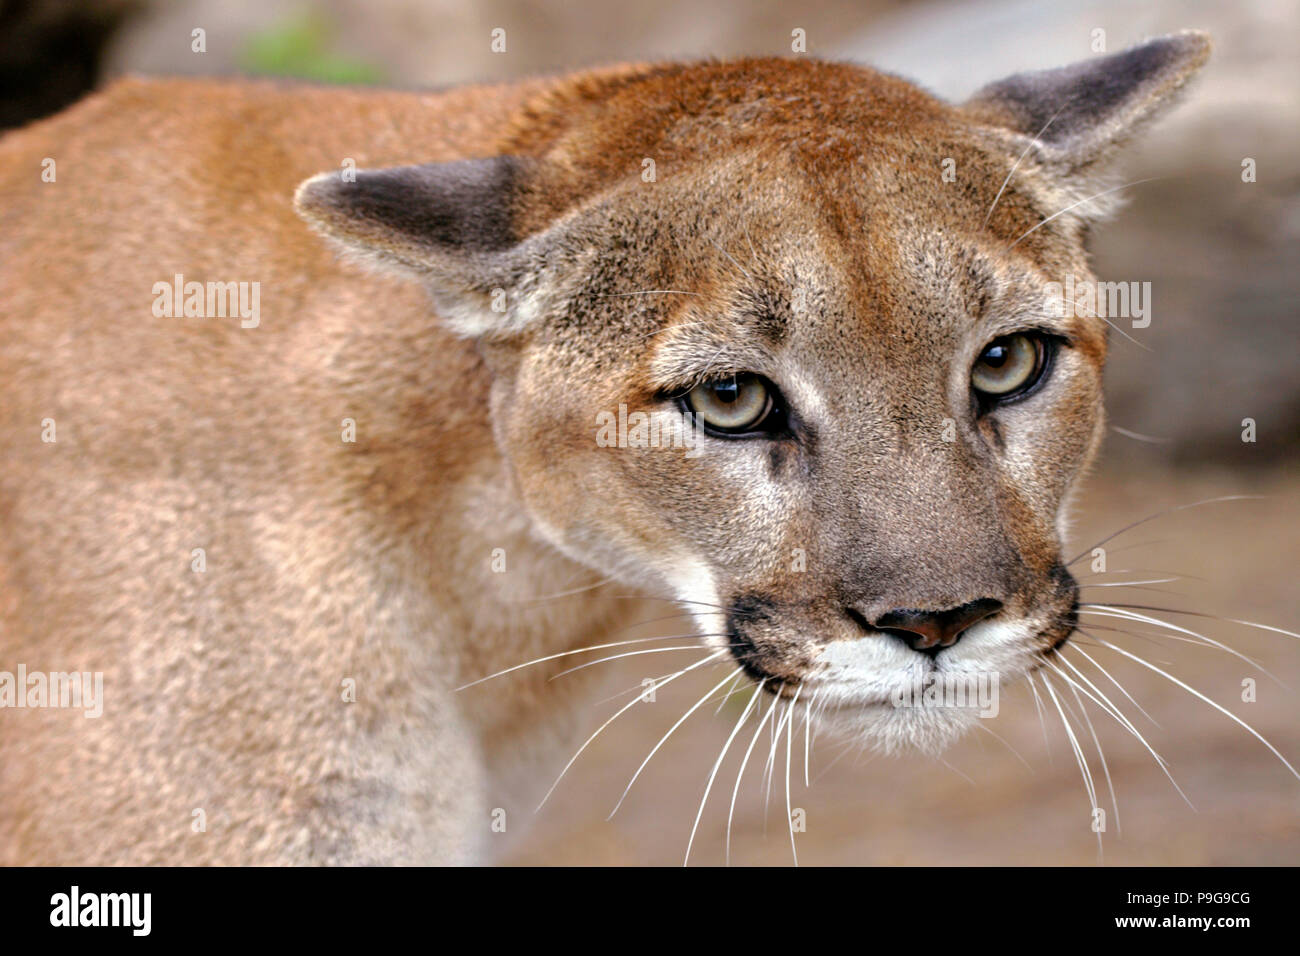 Belle Cougar Mountain Lion ou homme, portrait close up Photo Stock - Alamy